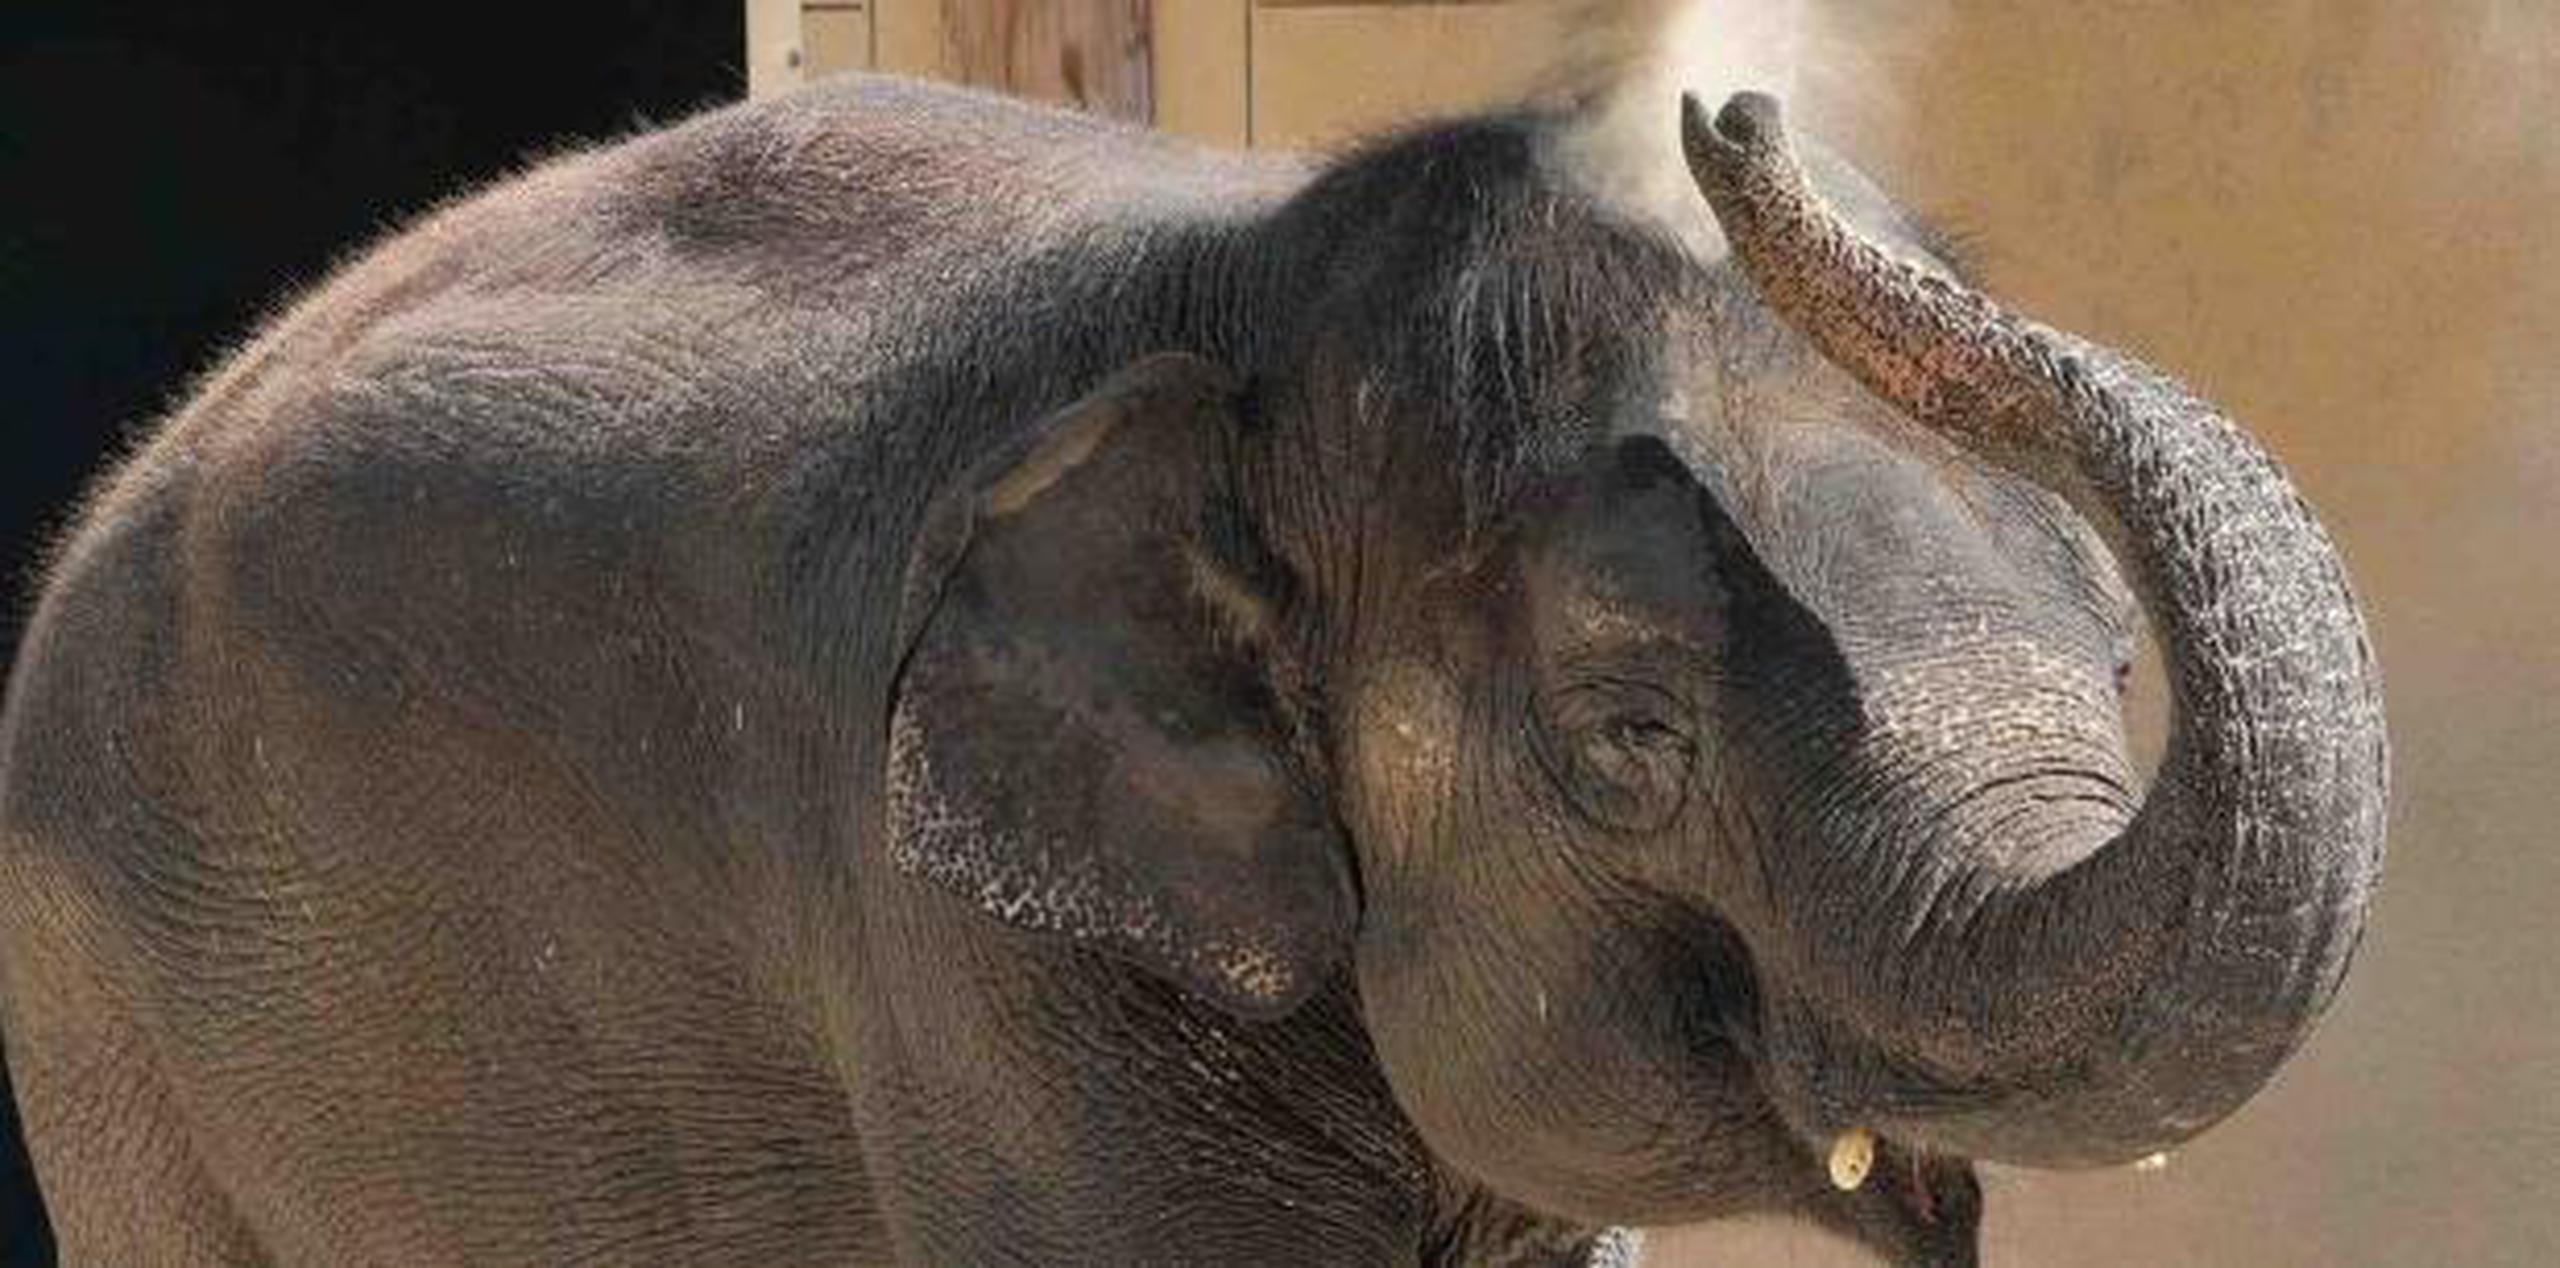 El zoológico ha recibido una subvención inicial de 4 millones de dólares por parte de la fundación Lilly Endowment Inc., con sede en Indianápolis, para apoyar el proyecto. (AP)